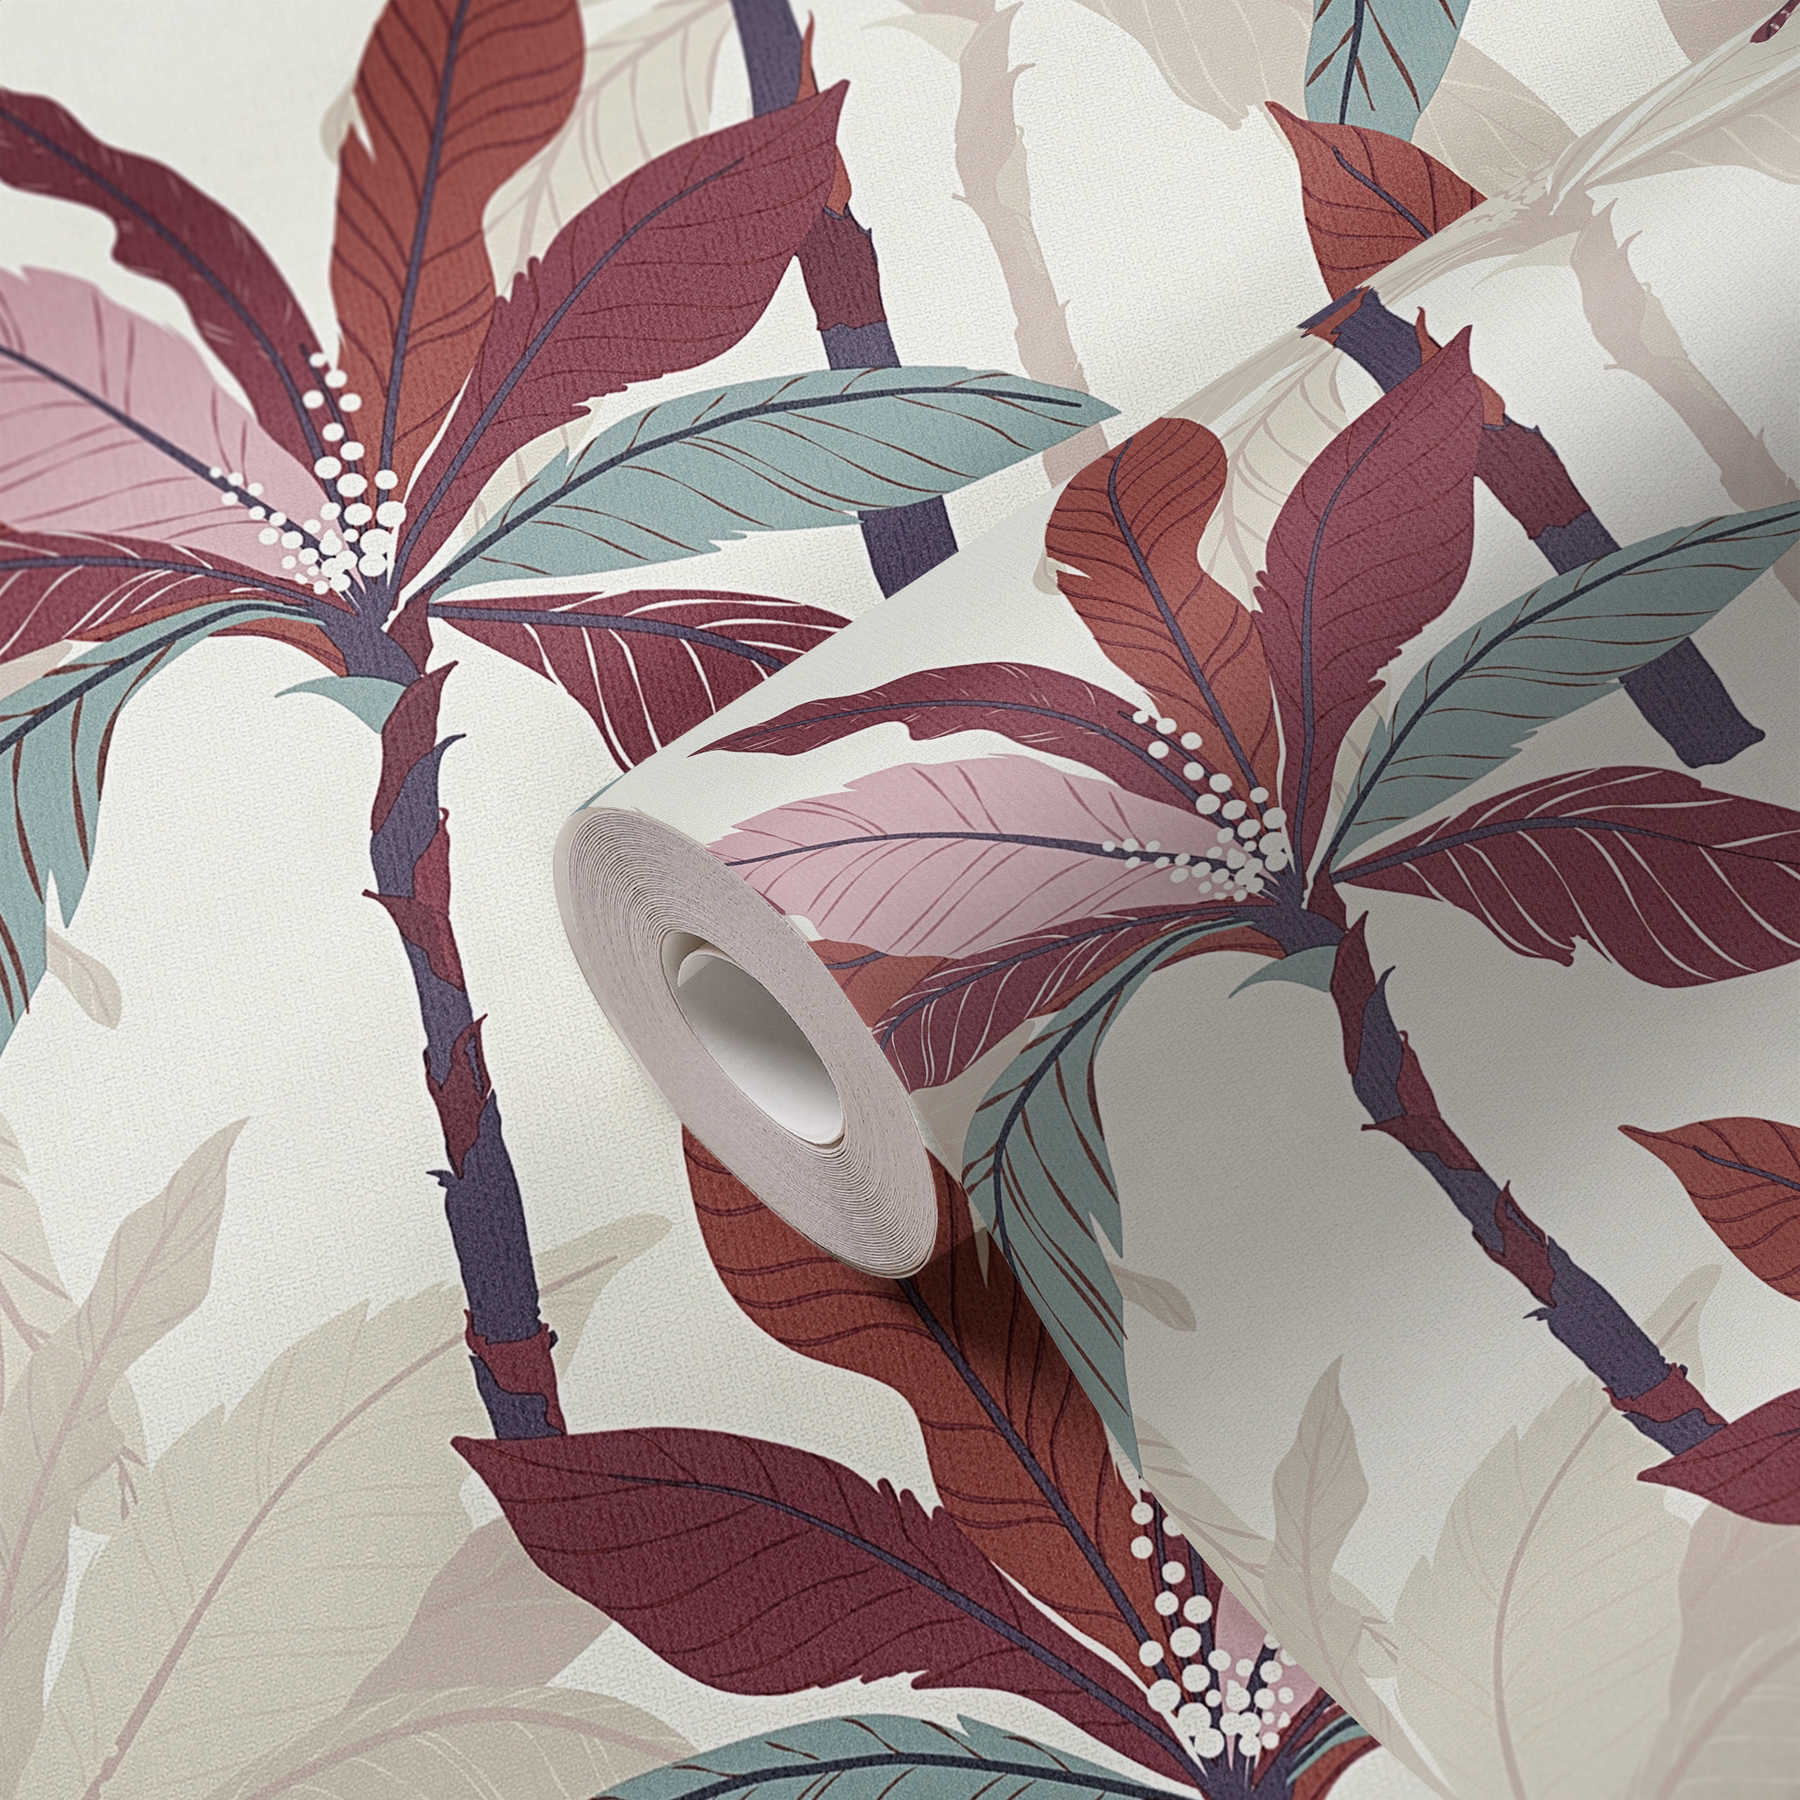             Papier peint design palmier, motif tropical - rouge, beige, crème
        